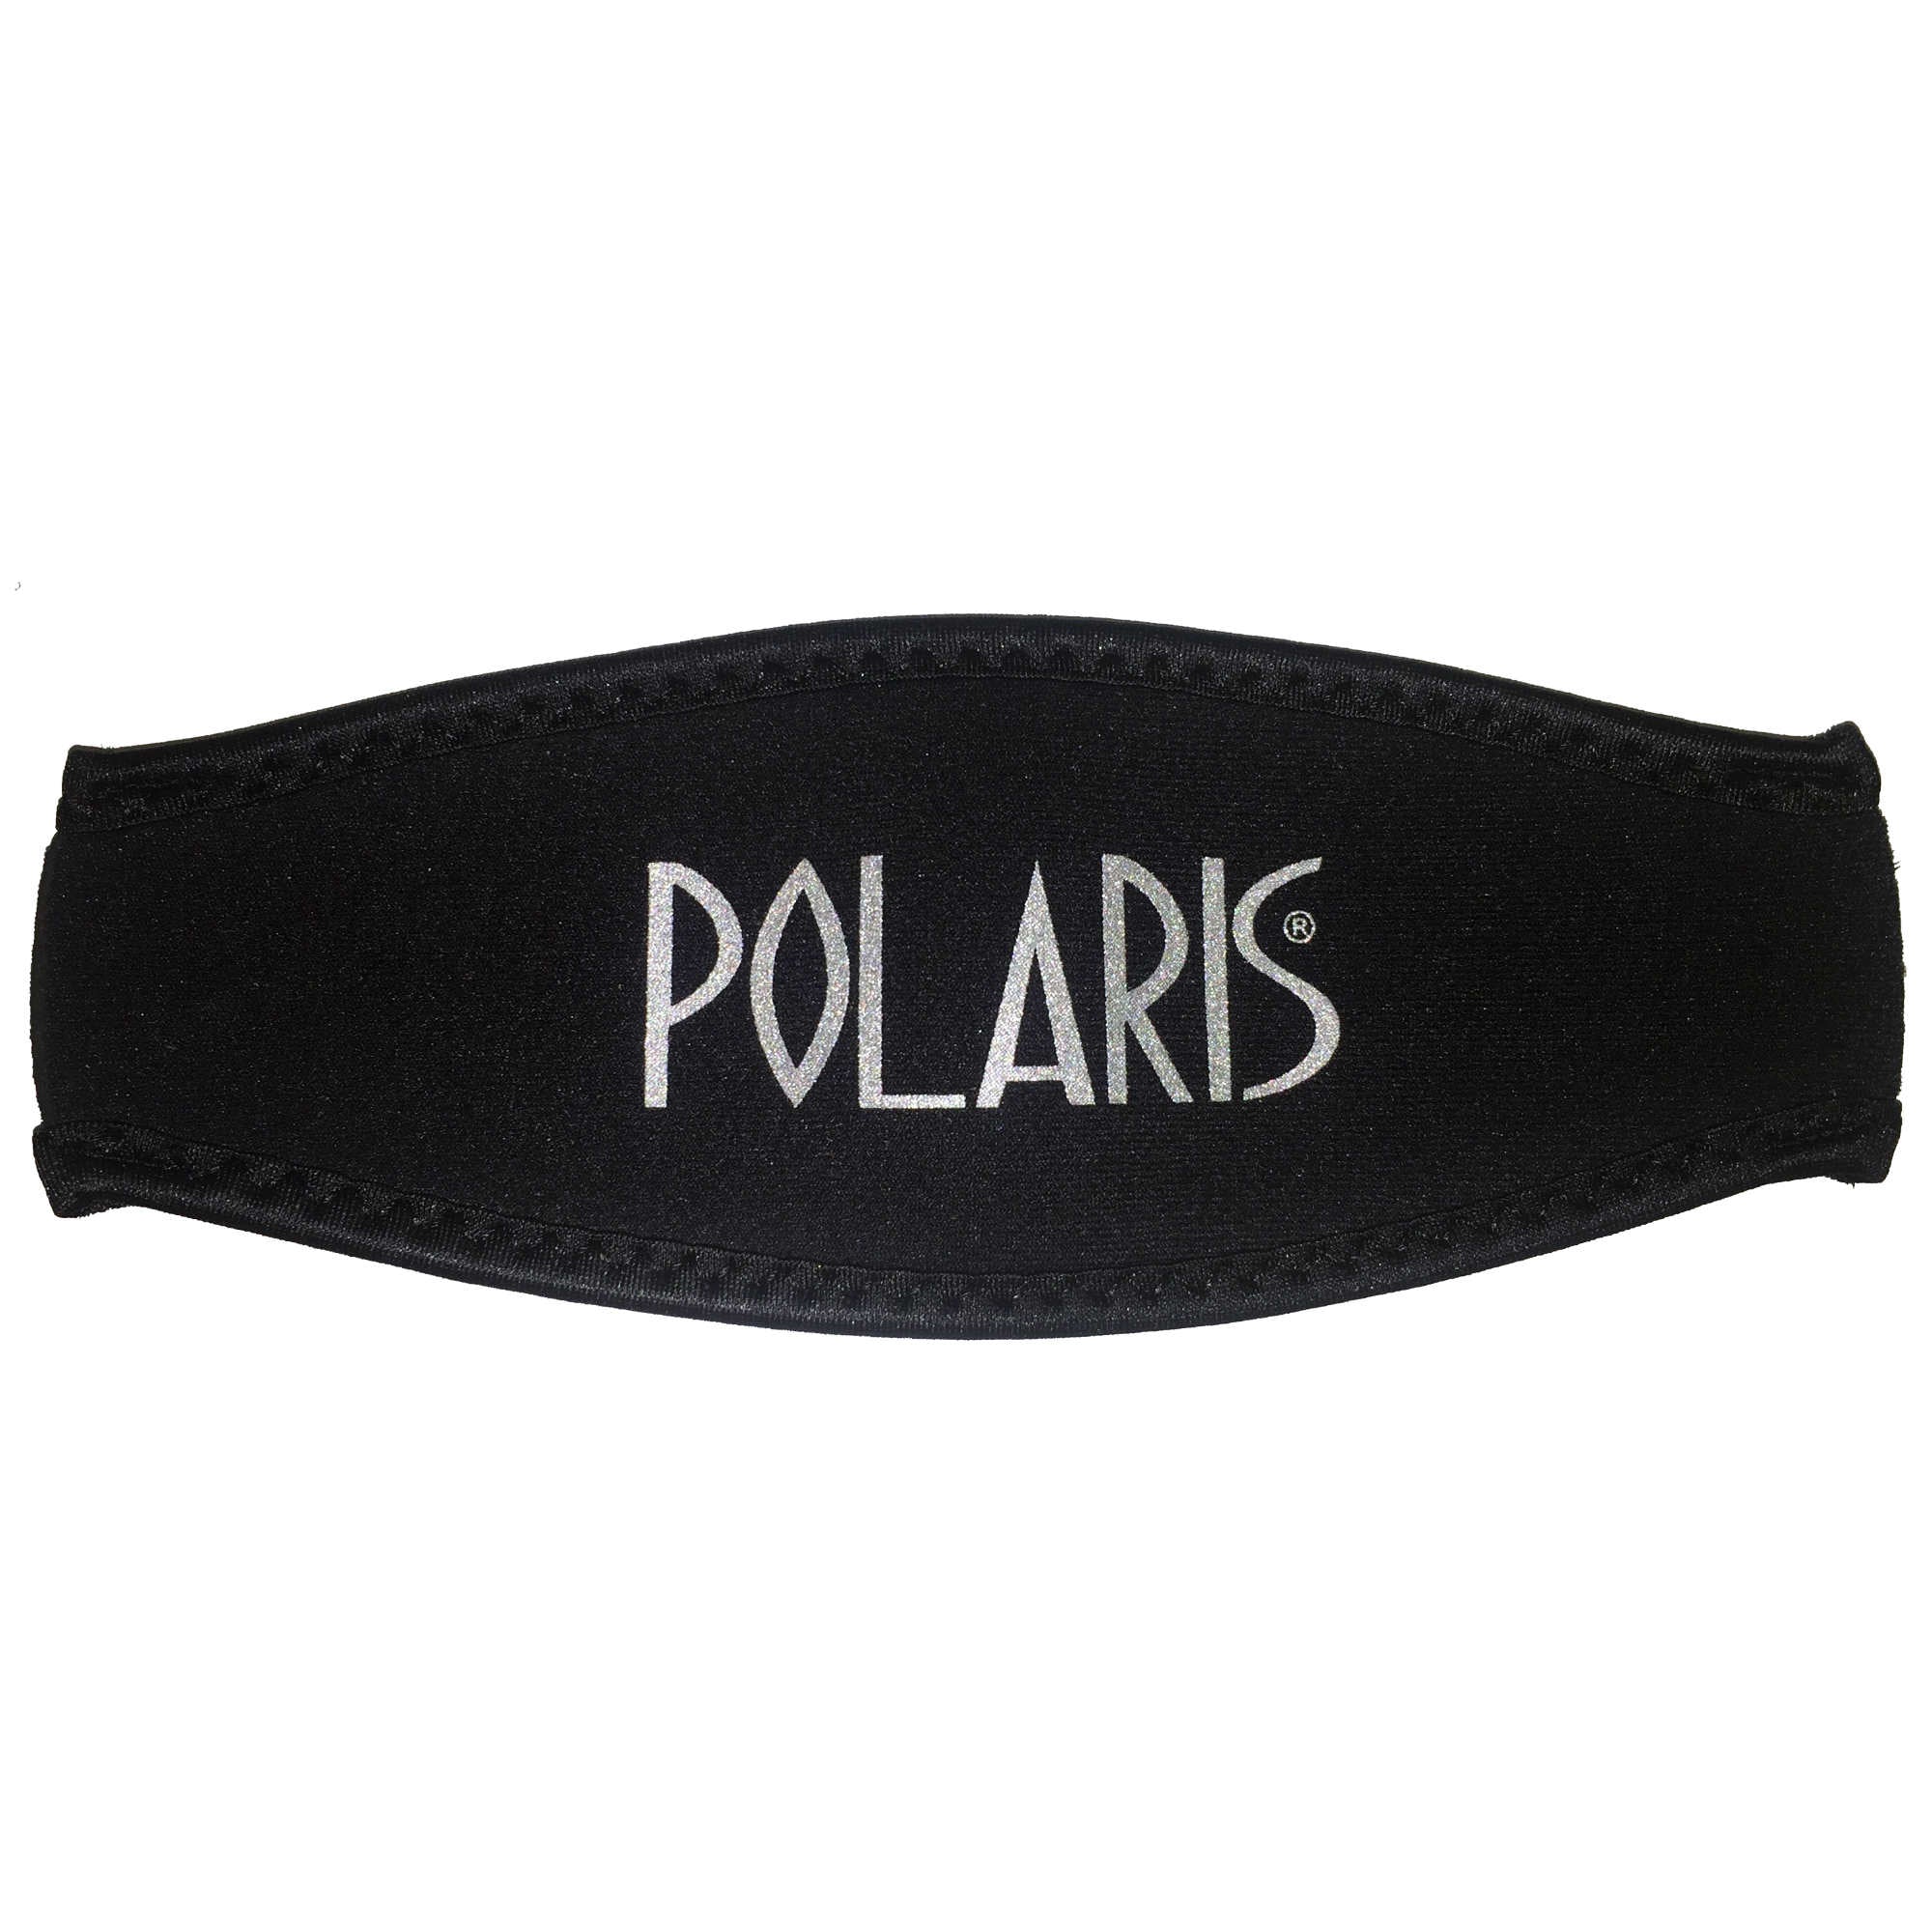 Neopren Maskenband in schwarz von Polaris. Geeignet für alle Tauchmasken mit Silikonmaskenband. 